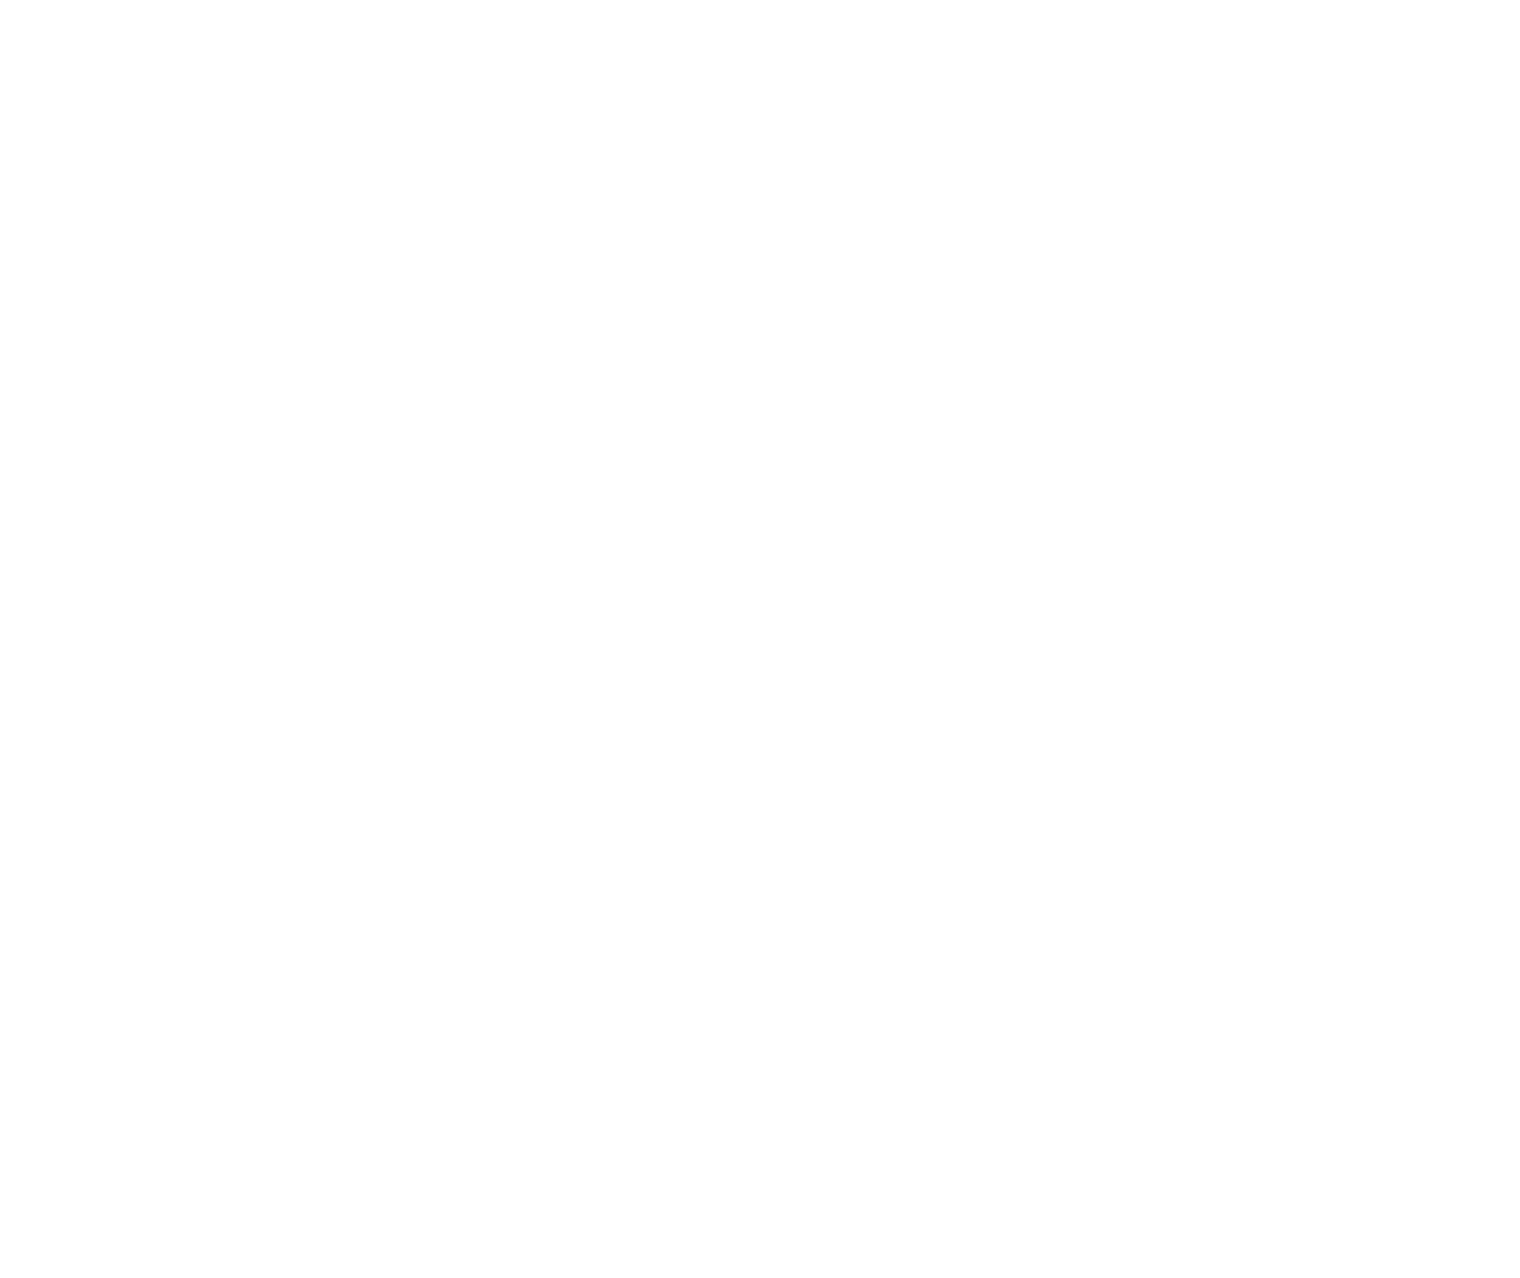 Elodie B